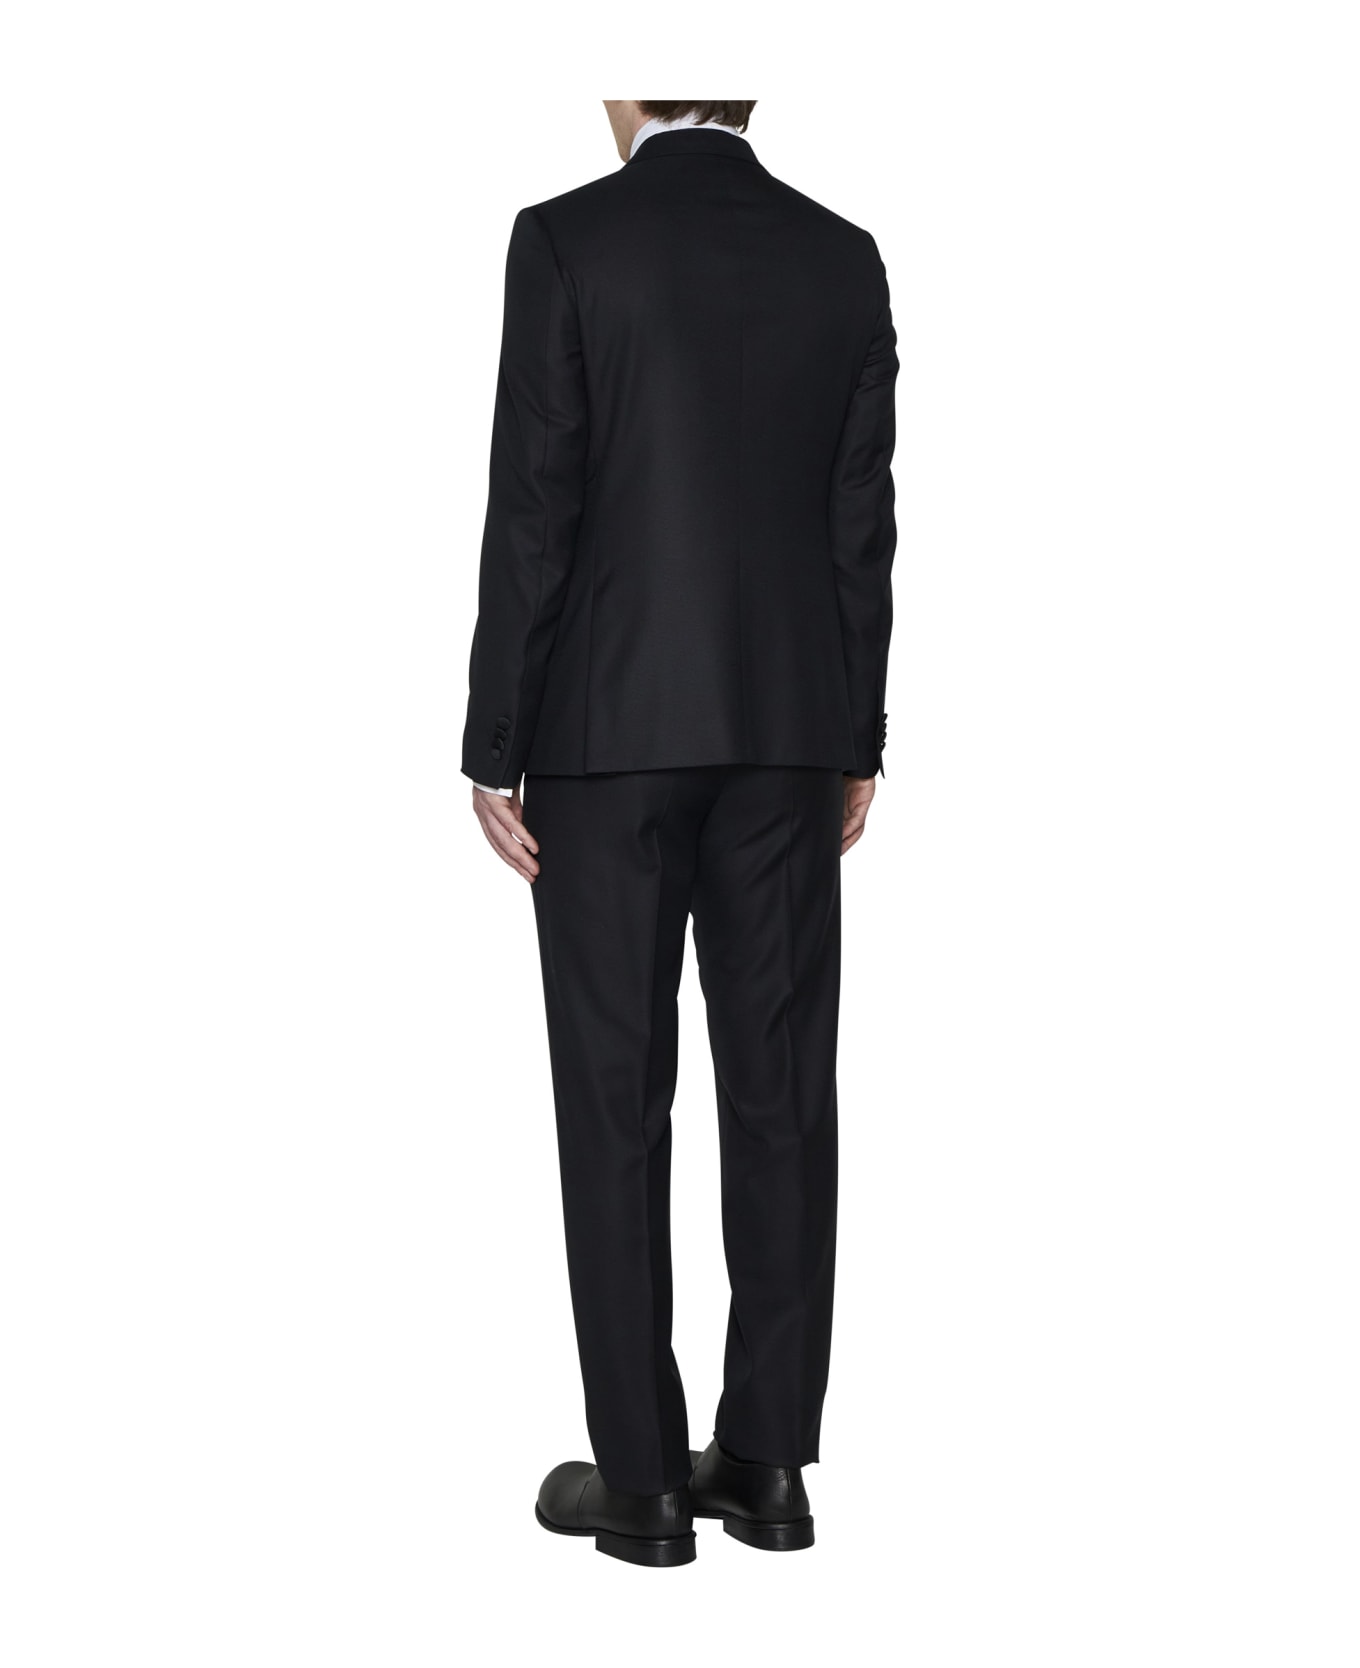 Zegna Suit - Black